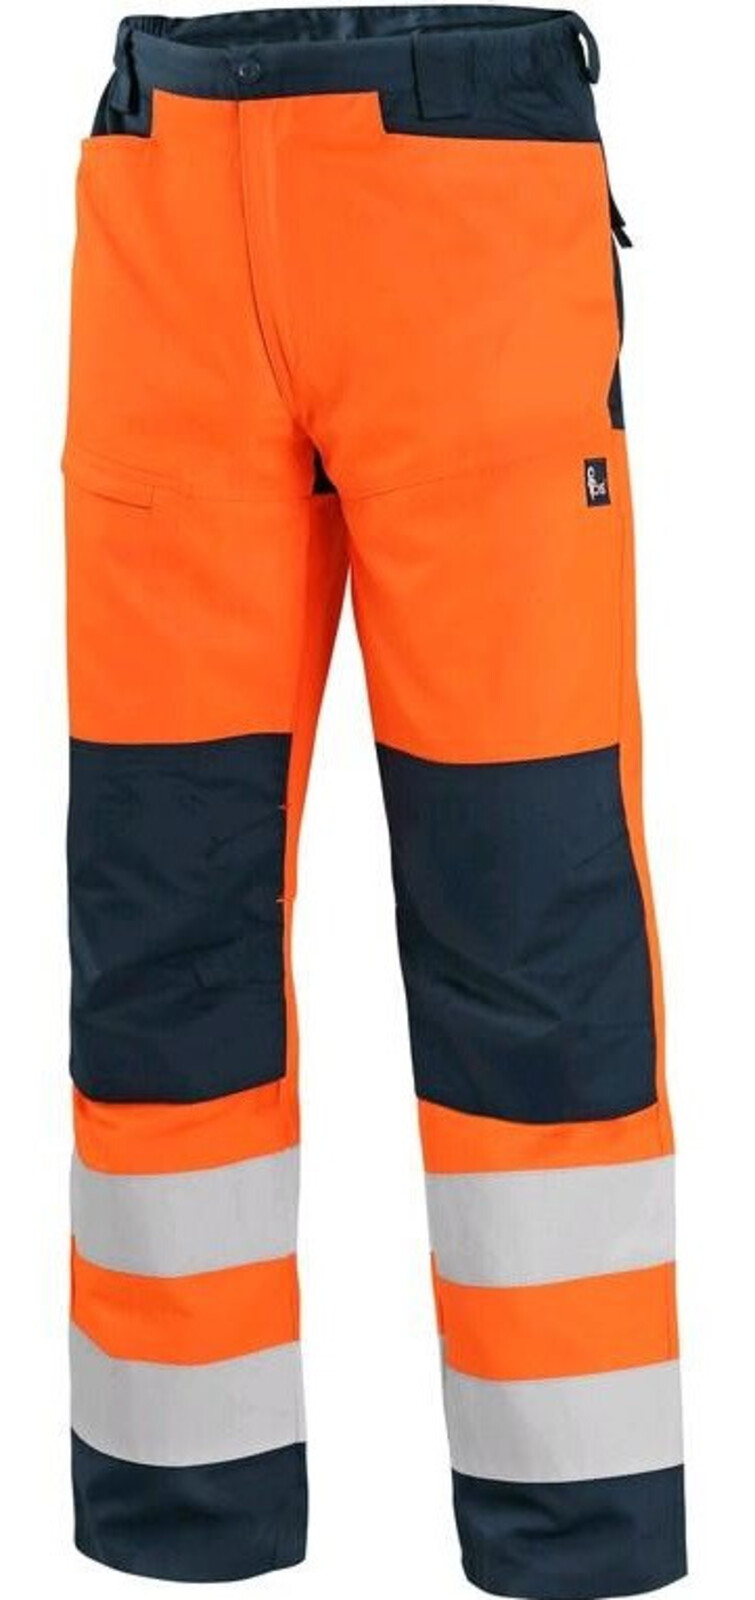 Pánske letné reflexné nohavice CXS Halifax - veľkosť: 48, farba: oranžová/navy